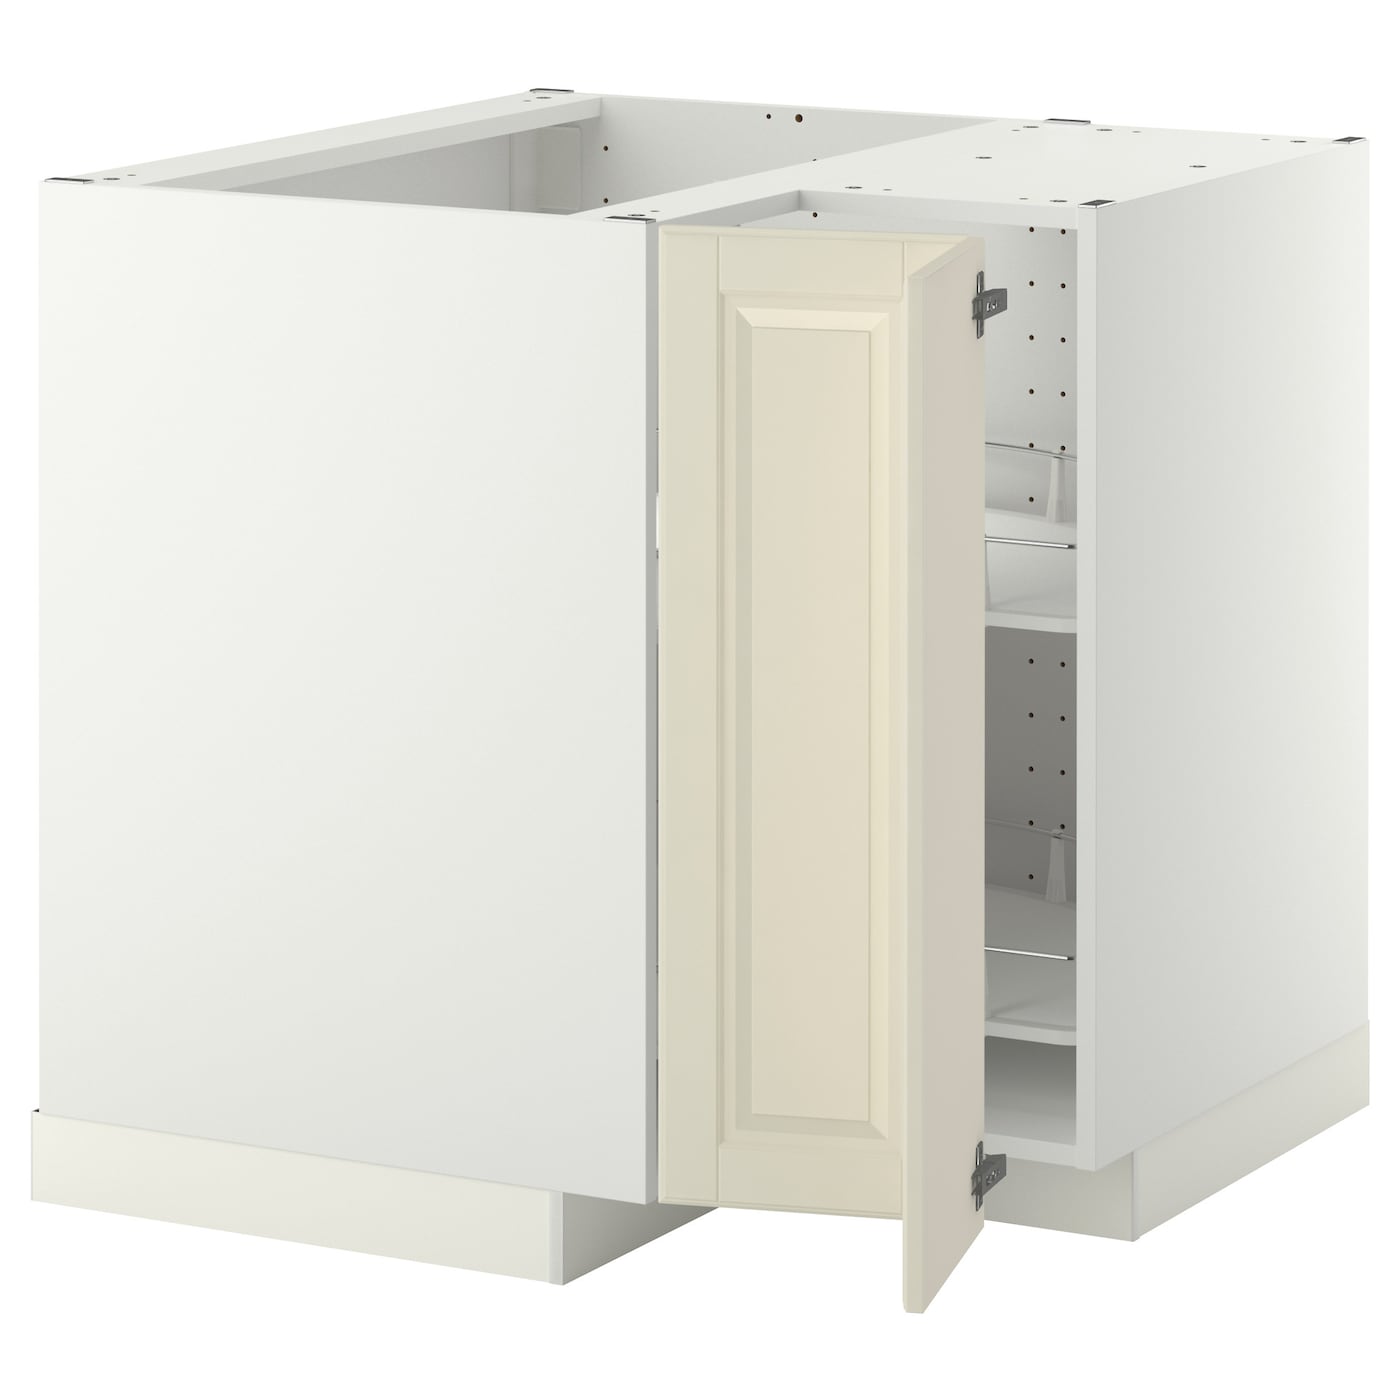 Напольный шкаф - METOD IKEA/ МЕТОД ИКЕА,  88х88 см, белый/светло-бежевый